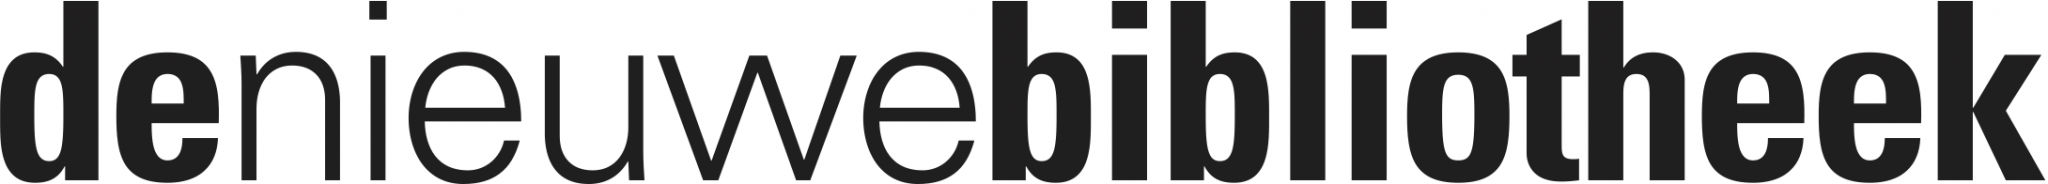 de-nieuwe-bibliotheek-logo.png (100371 bytes)